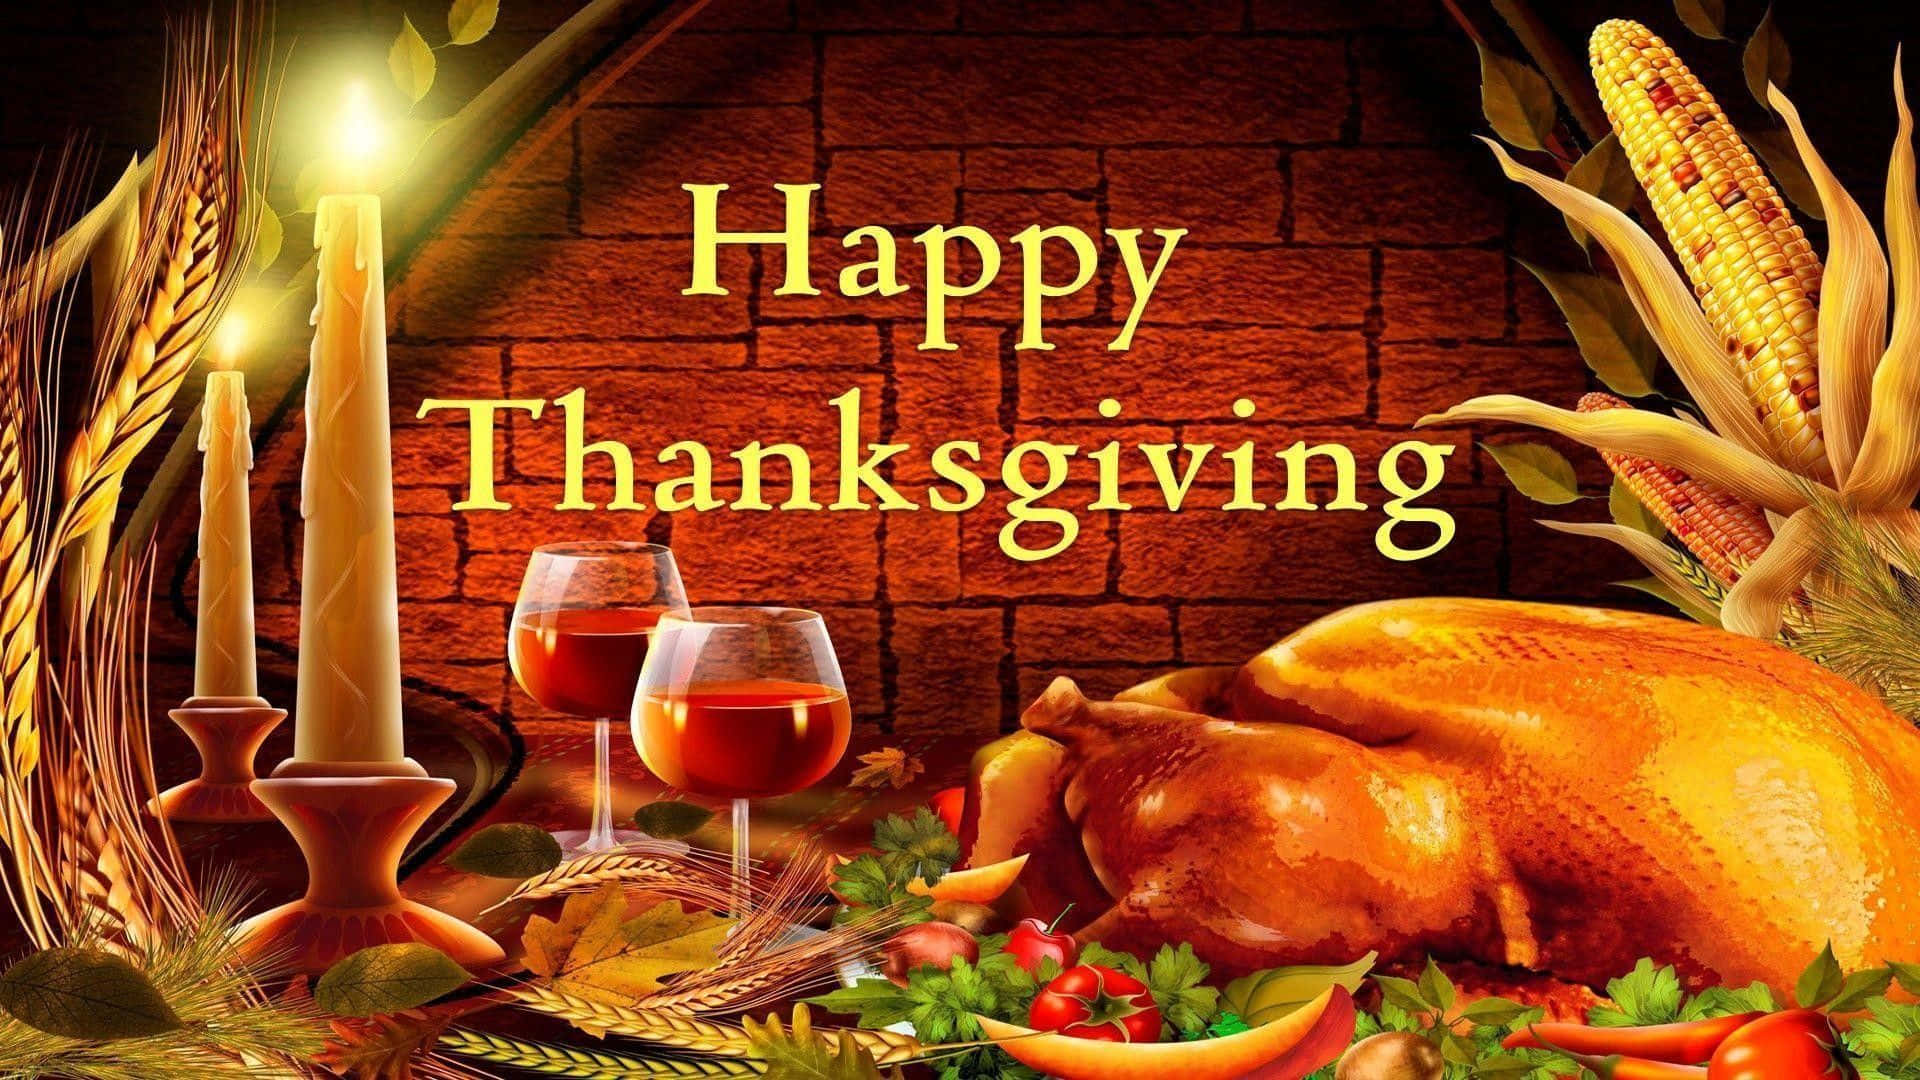 Önskardig En Glad Thanksgiving! Wallpaper